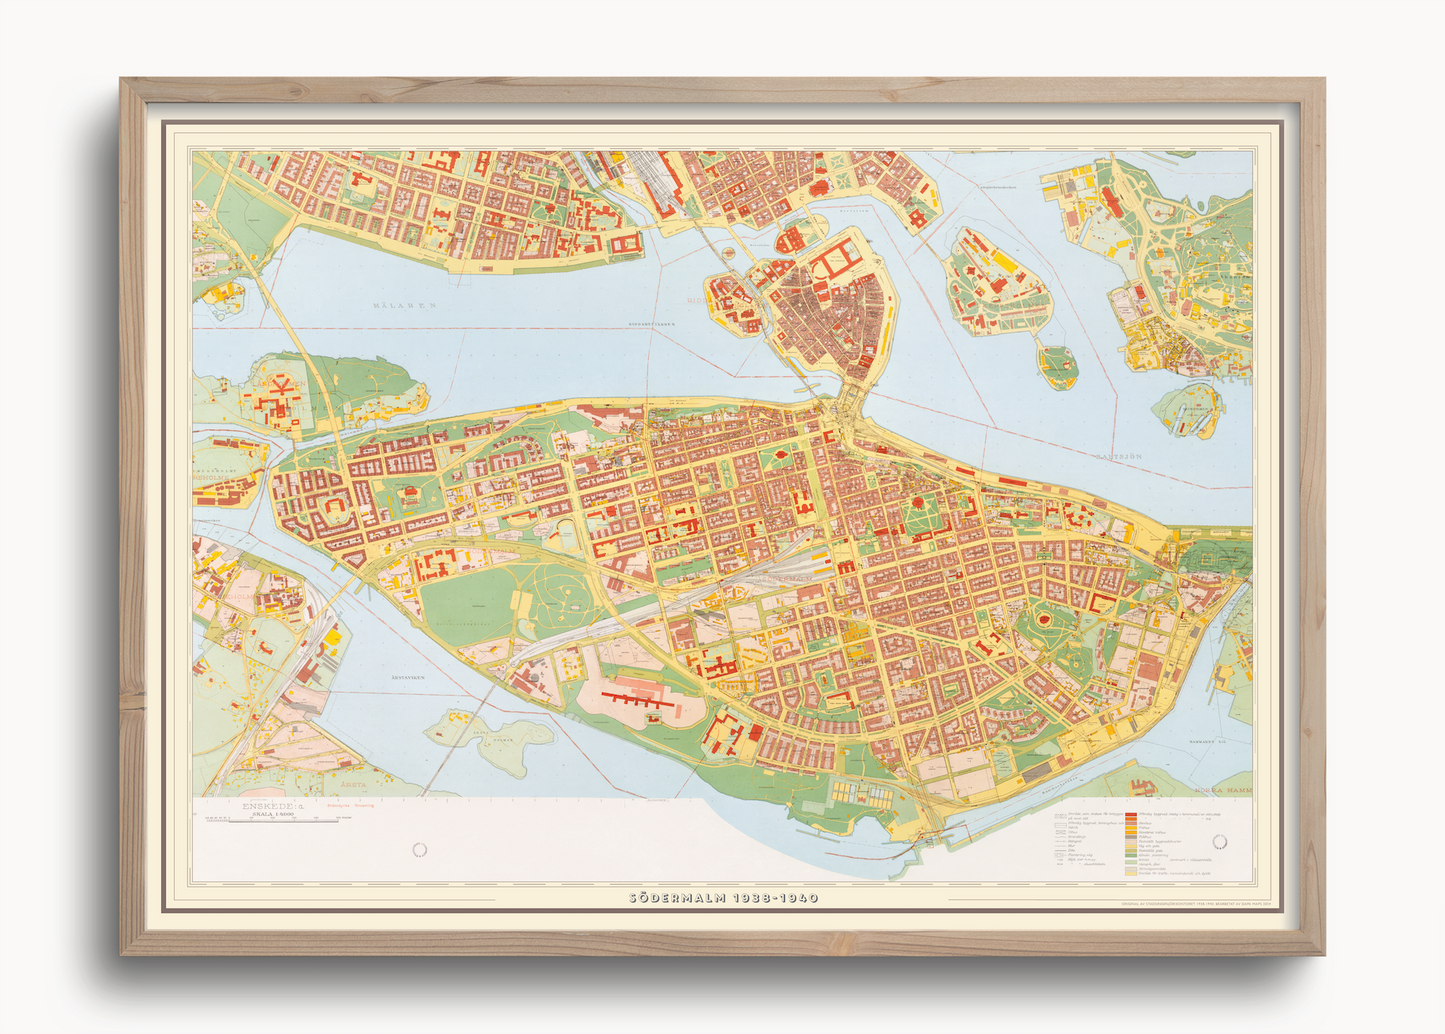 Södermalm (1938-1940 års karta över Stockholm)